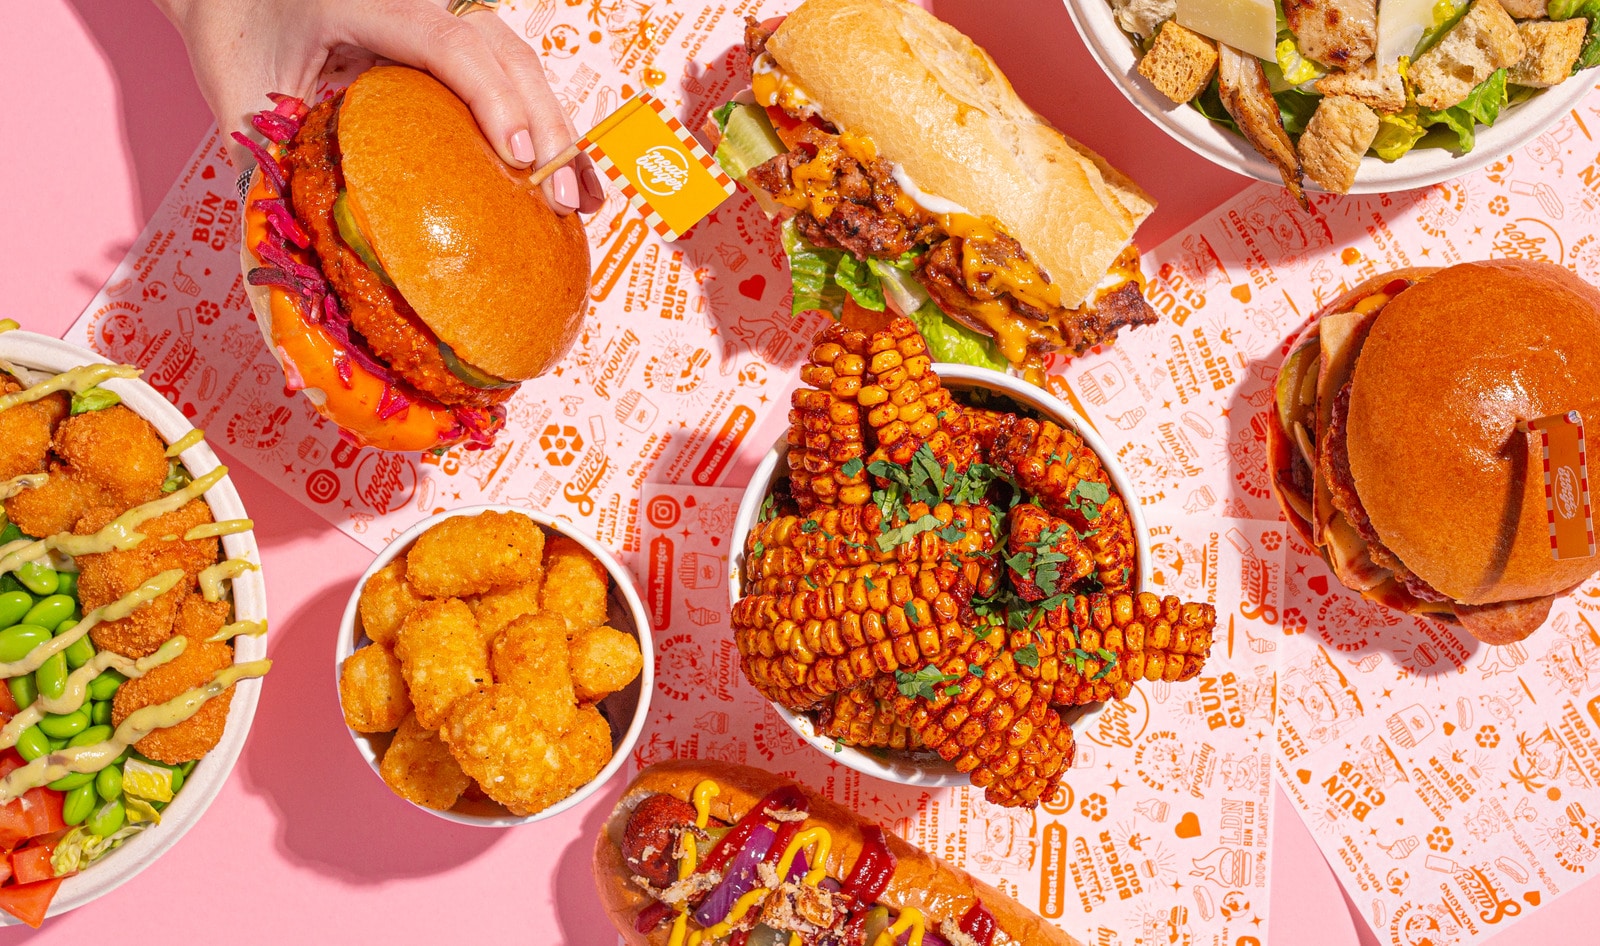 Lewis Hamilton's Vegan Neat Burger Revs Up US Expansion With $18 Million Raise